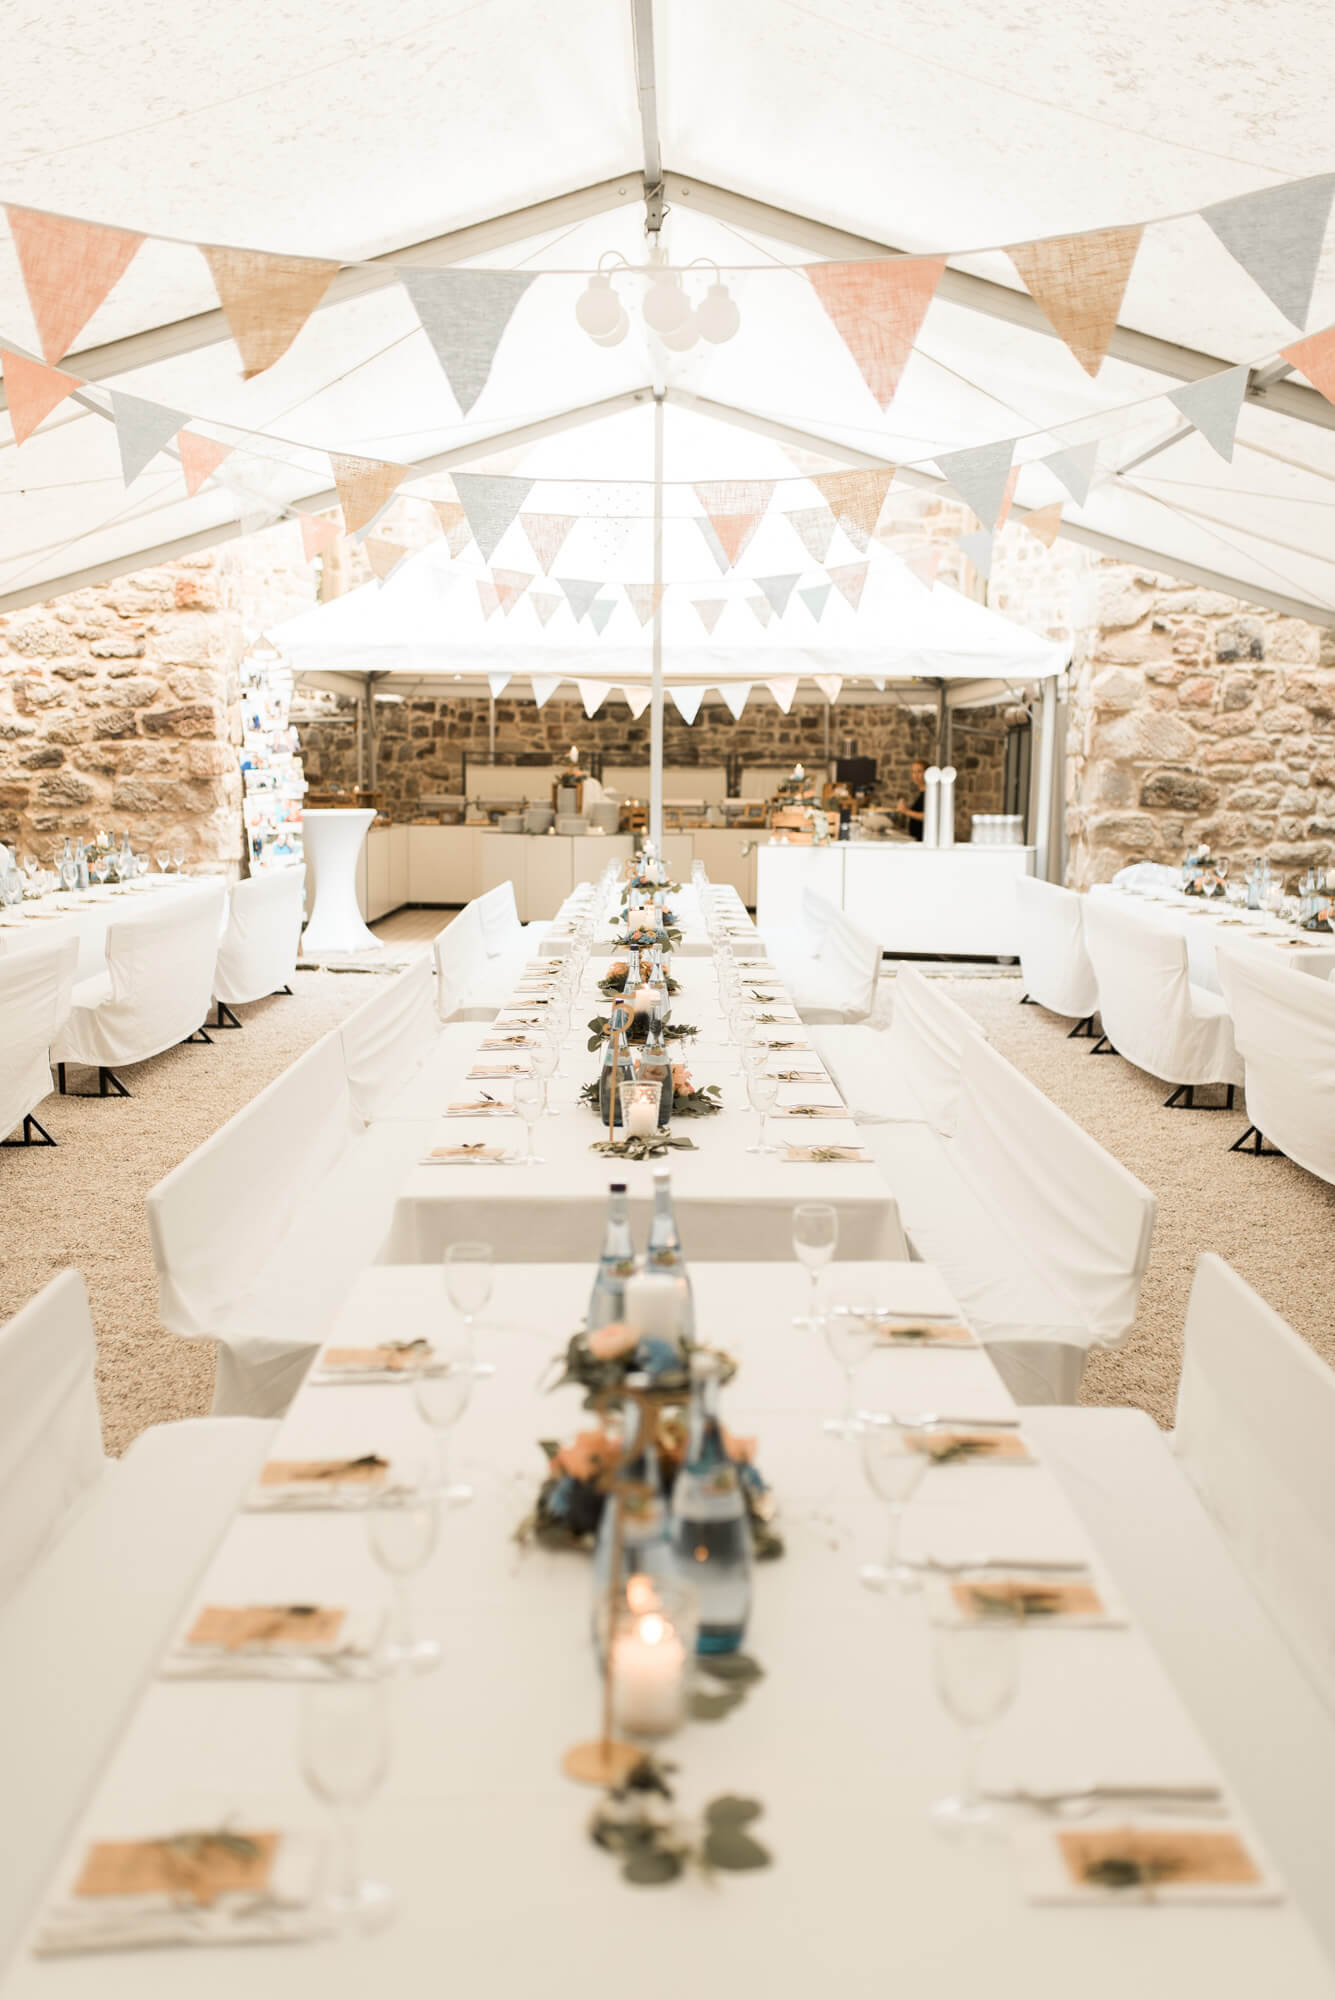 Location Einkorn Hochzeit weißes Zelt mit Girlanden Wimpeln und Tischdeko